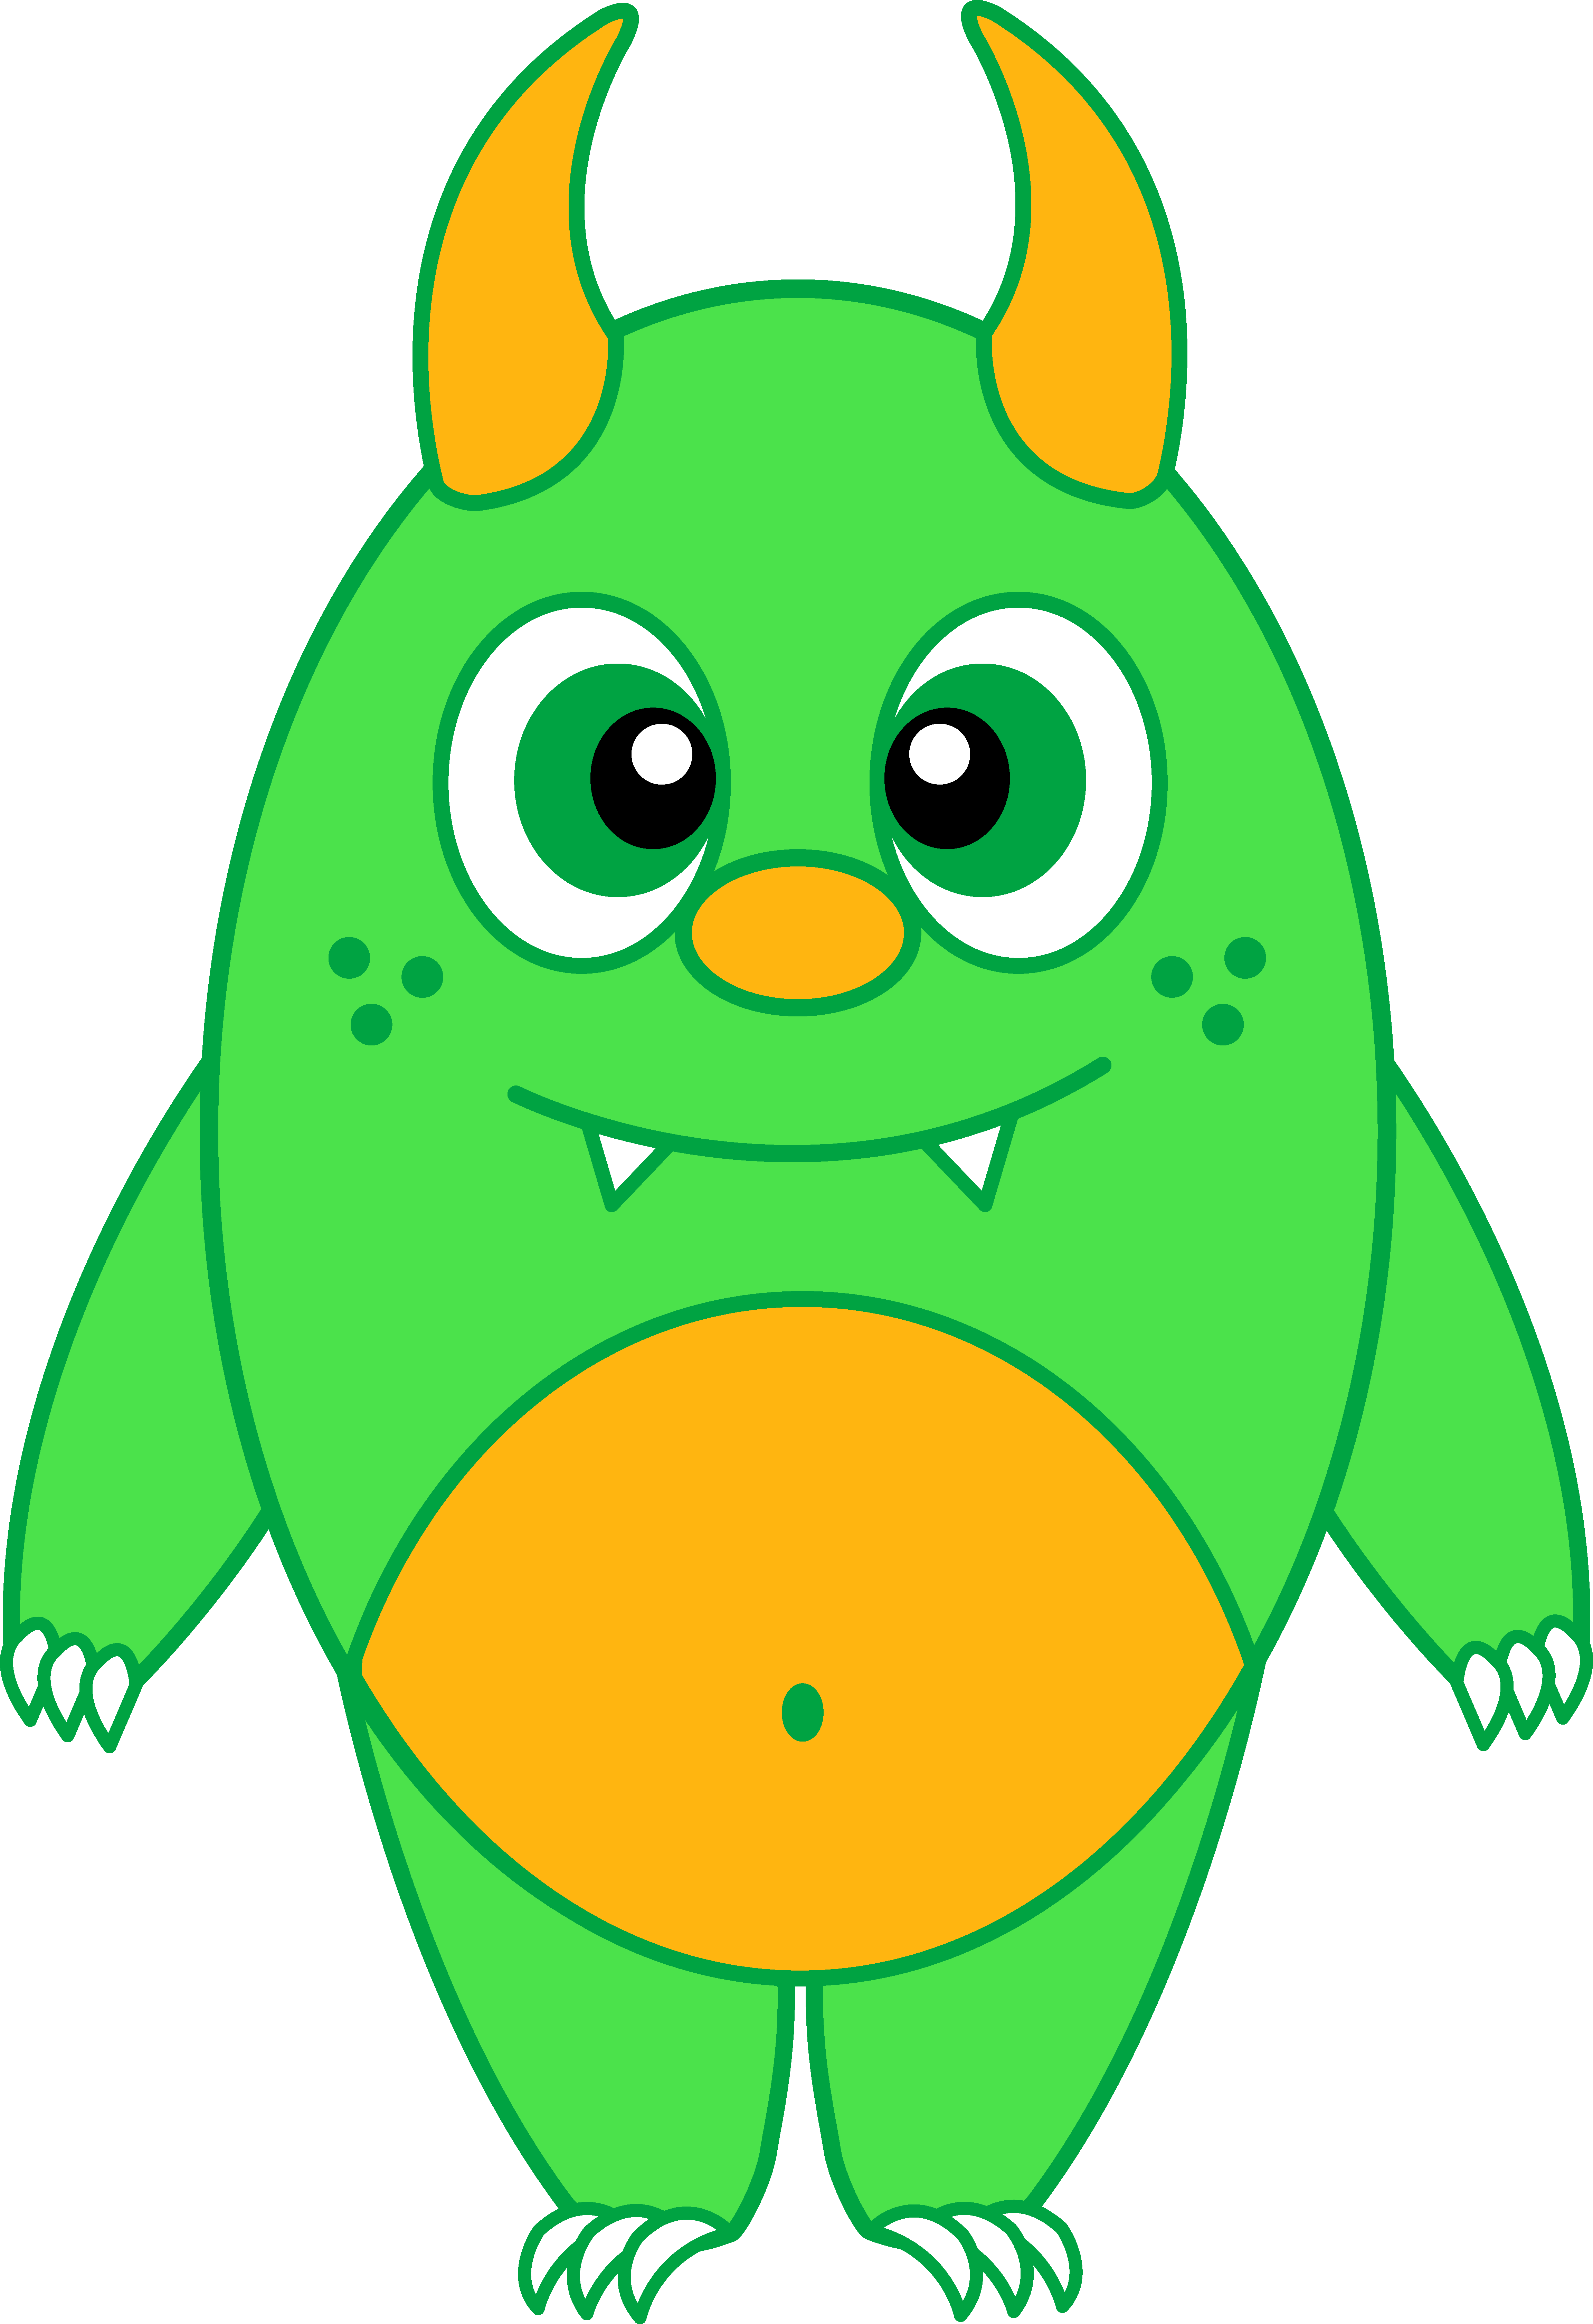 Cute green monster clipart